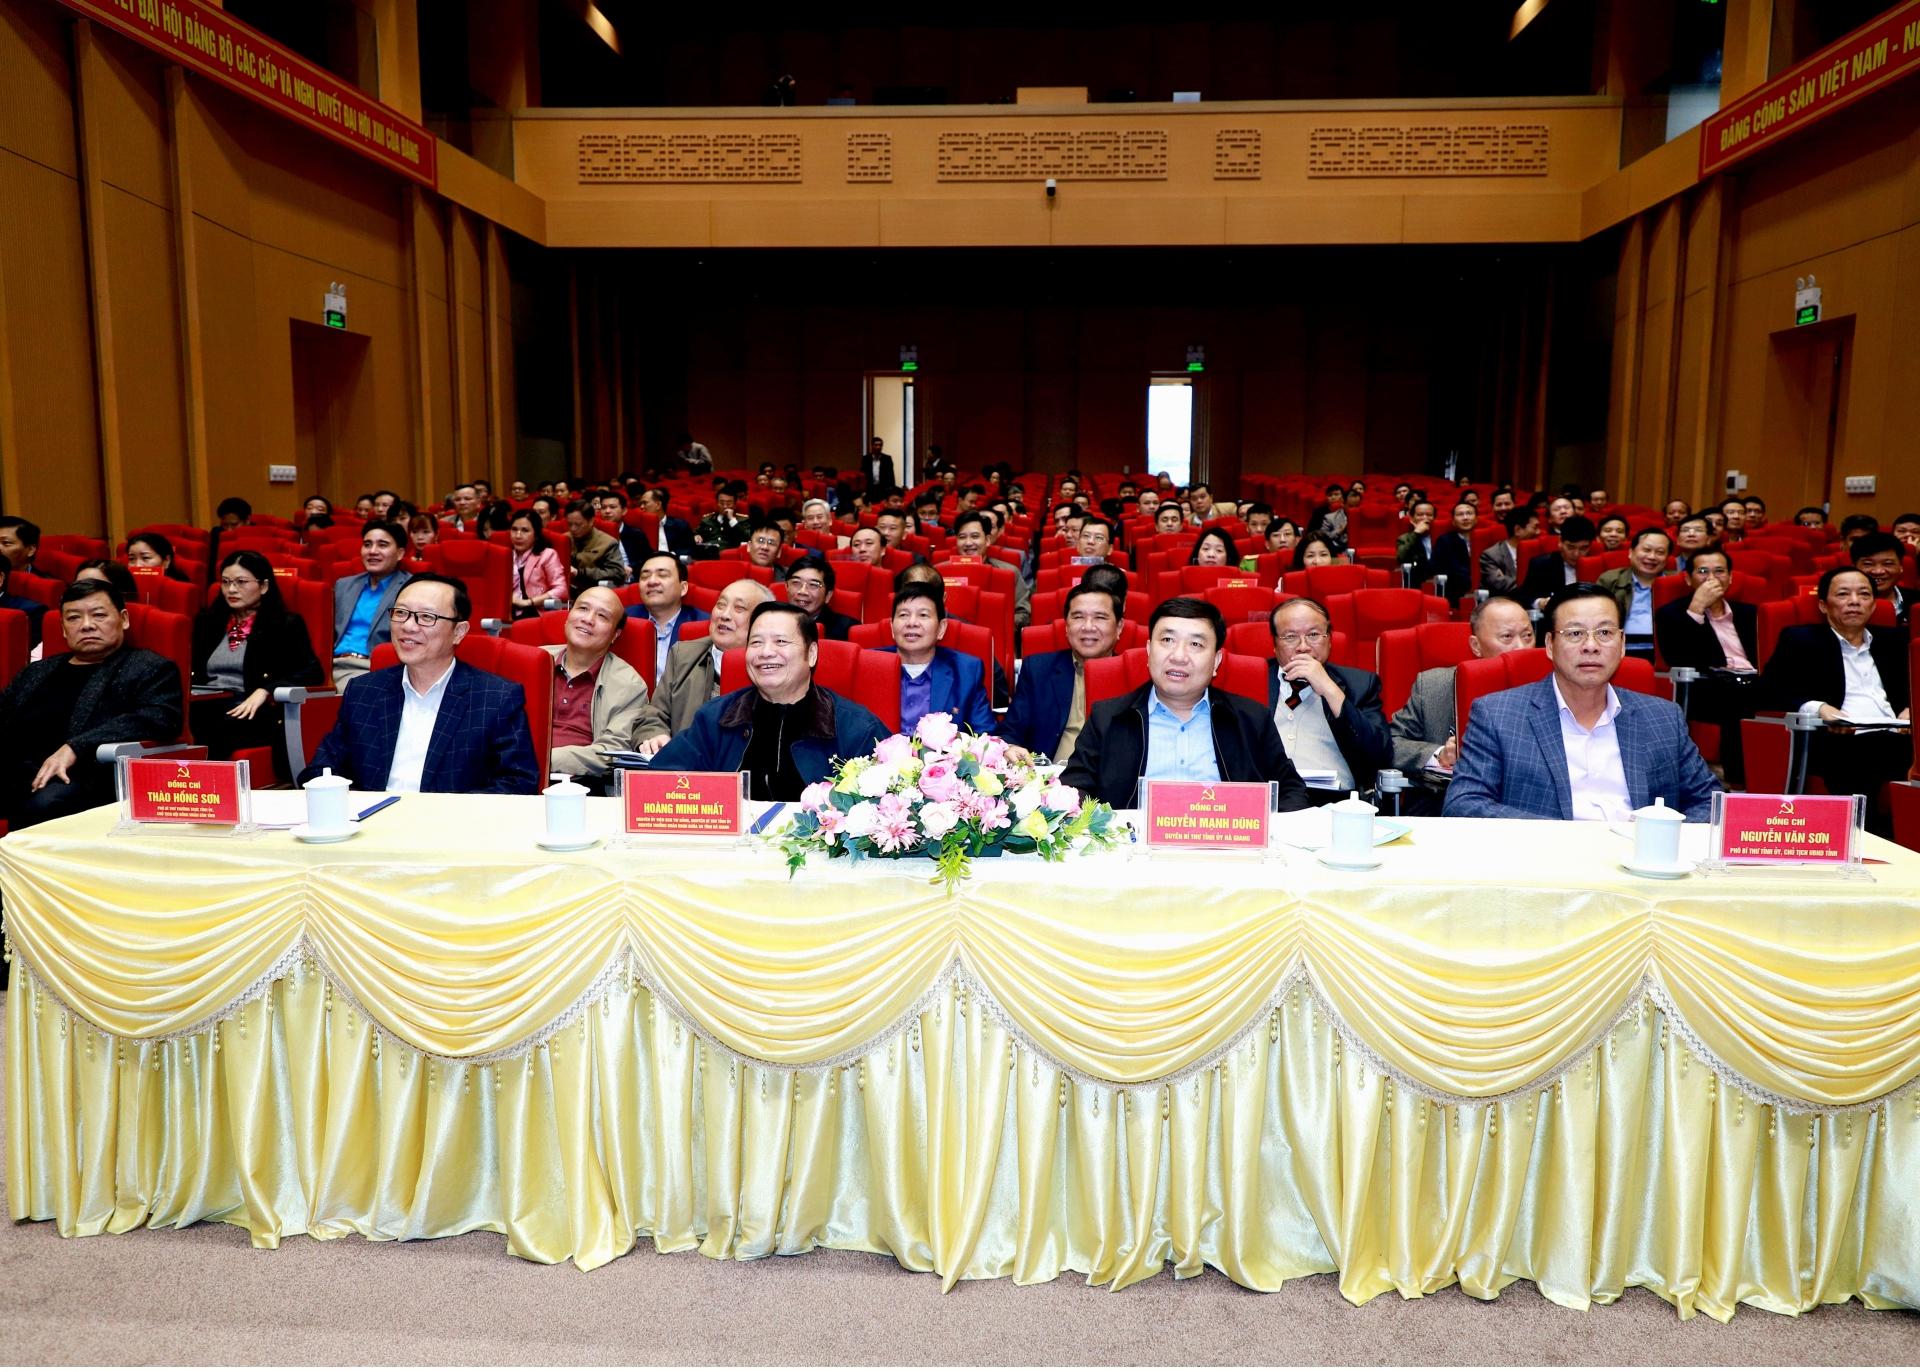 Các đại biểu tham dự hội nghị tại điểm cầu tỉnh Hà Giang.